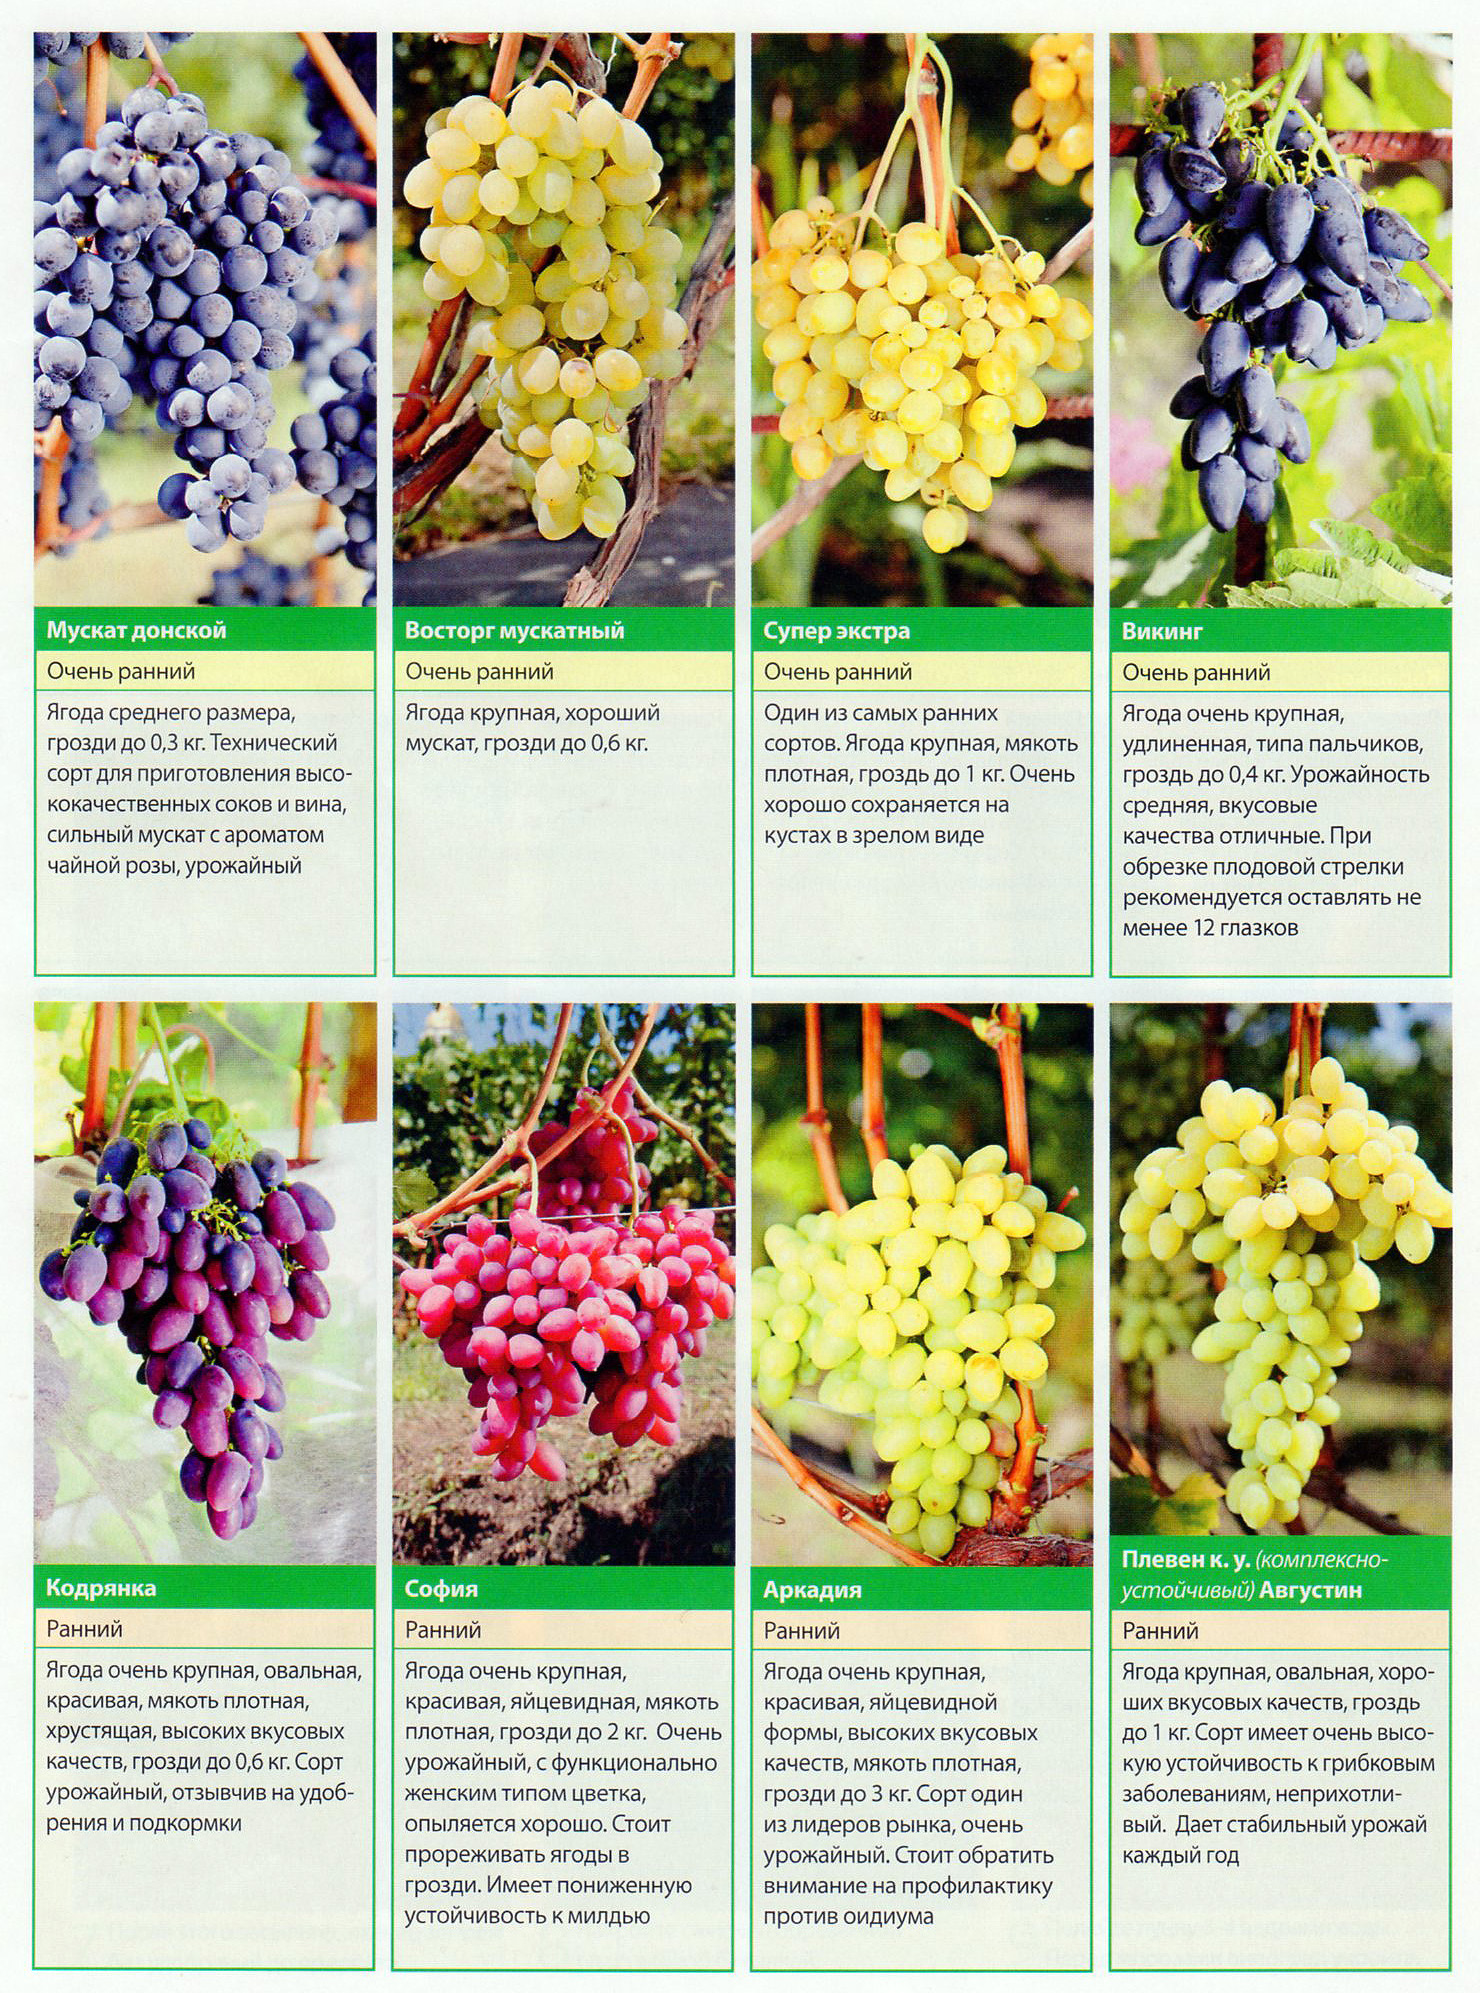 Виноград супер экстра: описание сорта, фото и отзывы садоводов - журнал "совхозик"